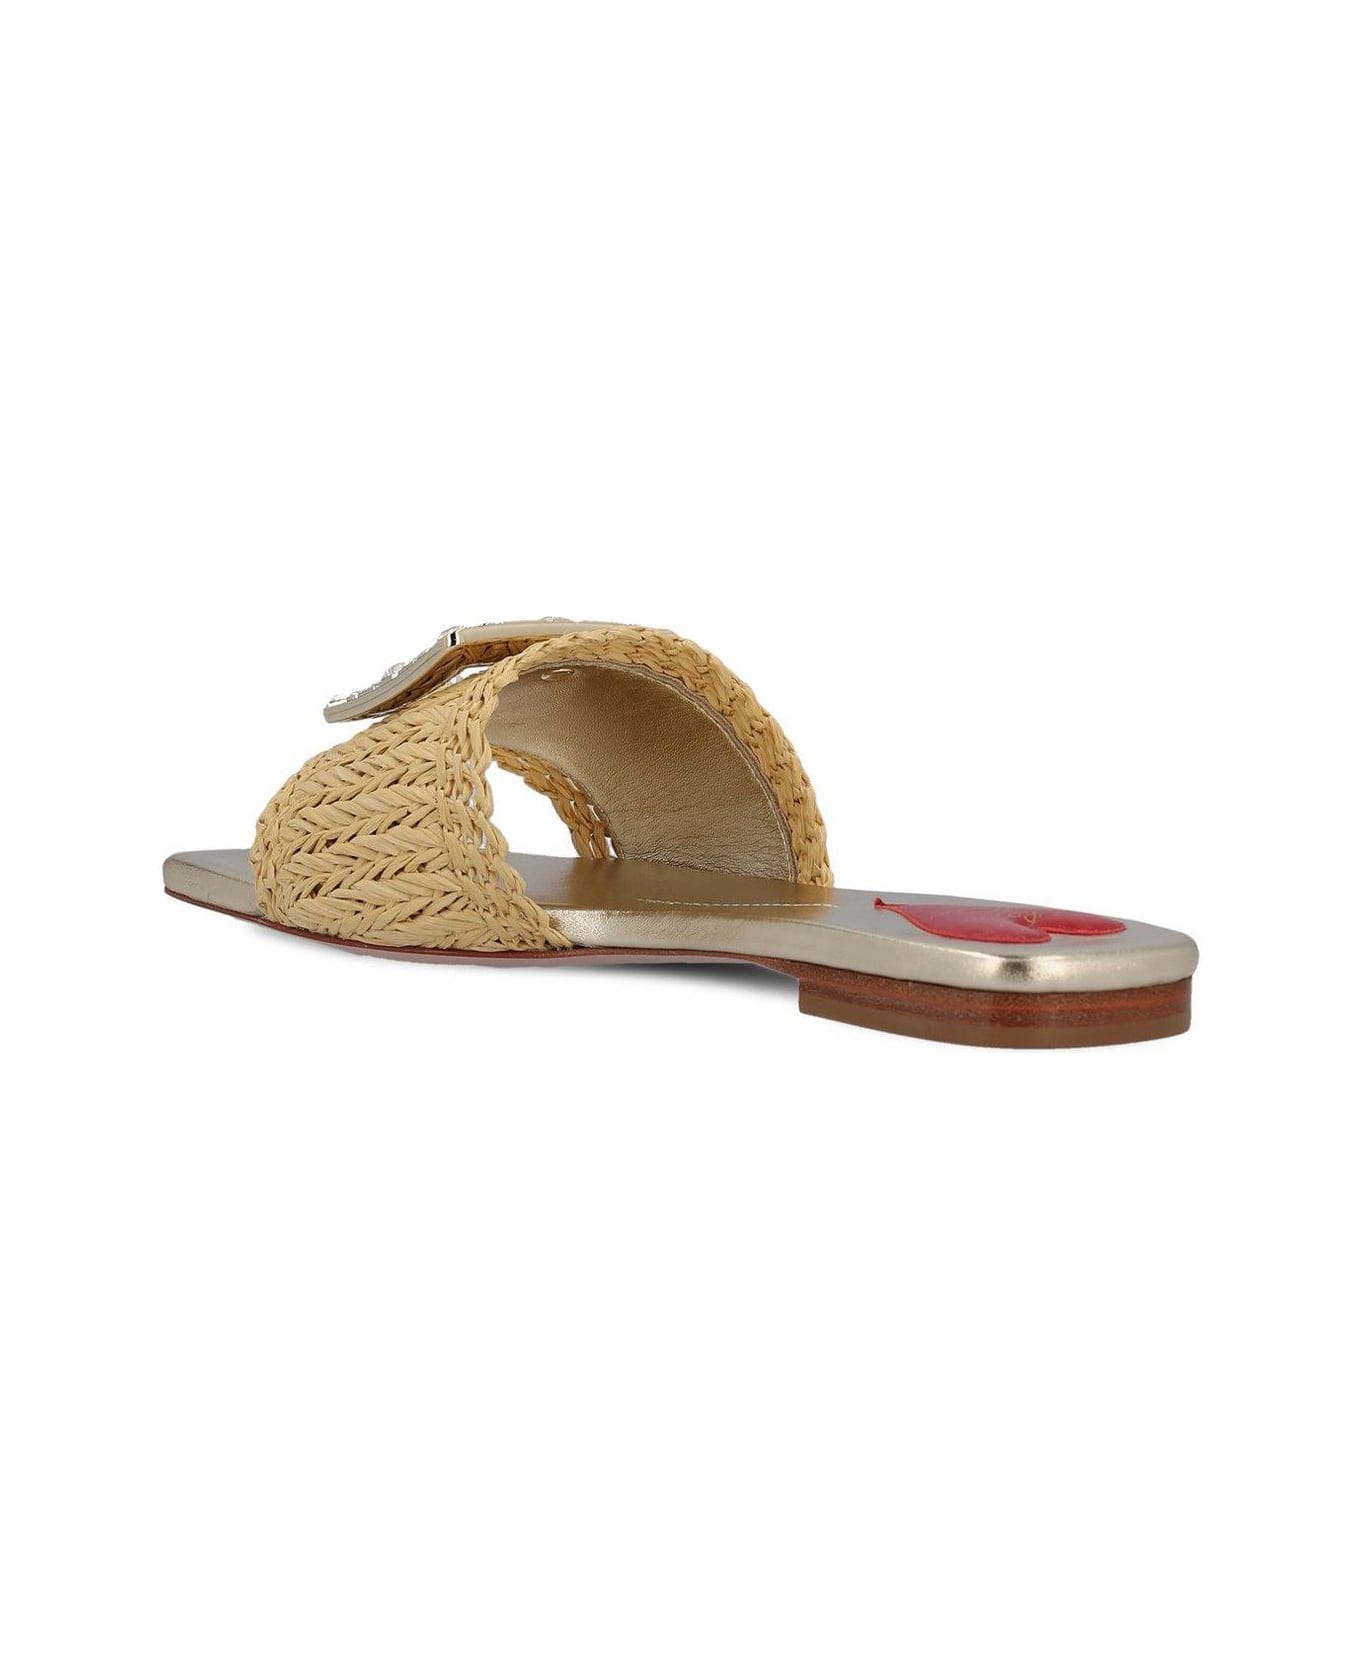 Roger Vivier Embellished Slip-on Sandals - Beige サンダル